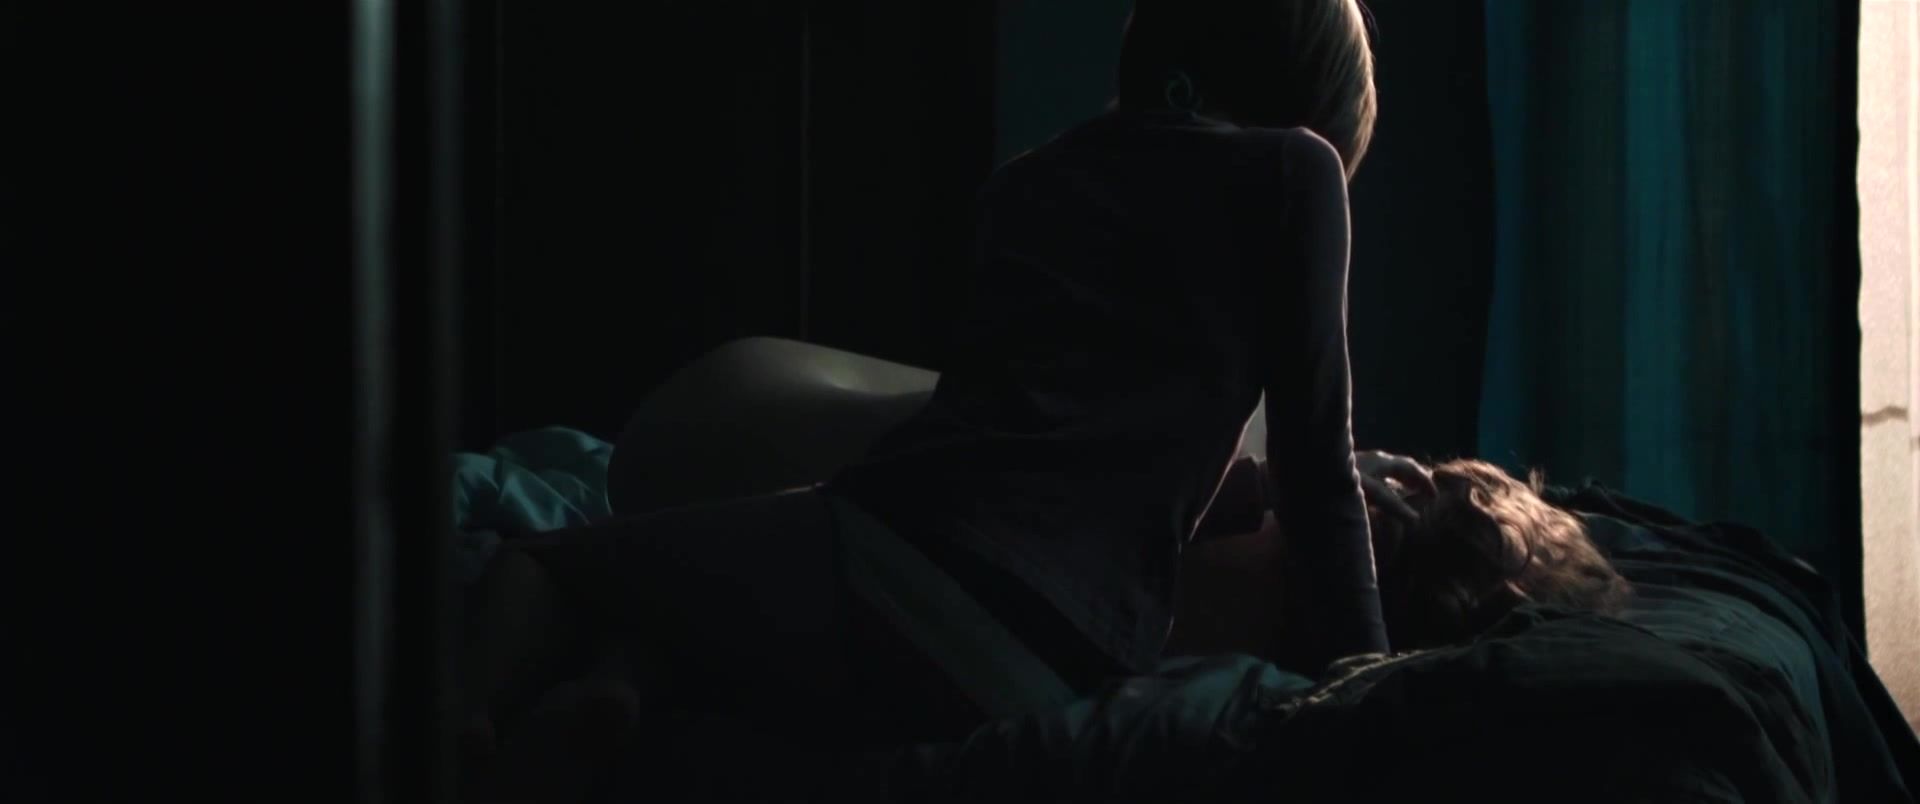 Mamada Leeanna Walsman Nude - Dawn (2015) Teen Sex - 2